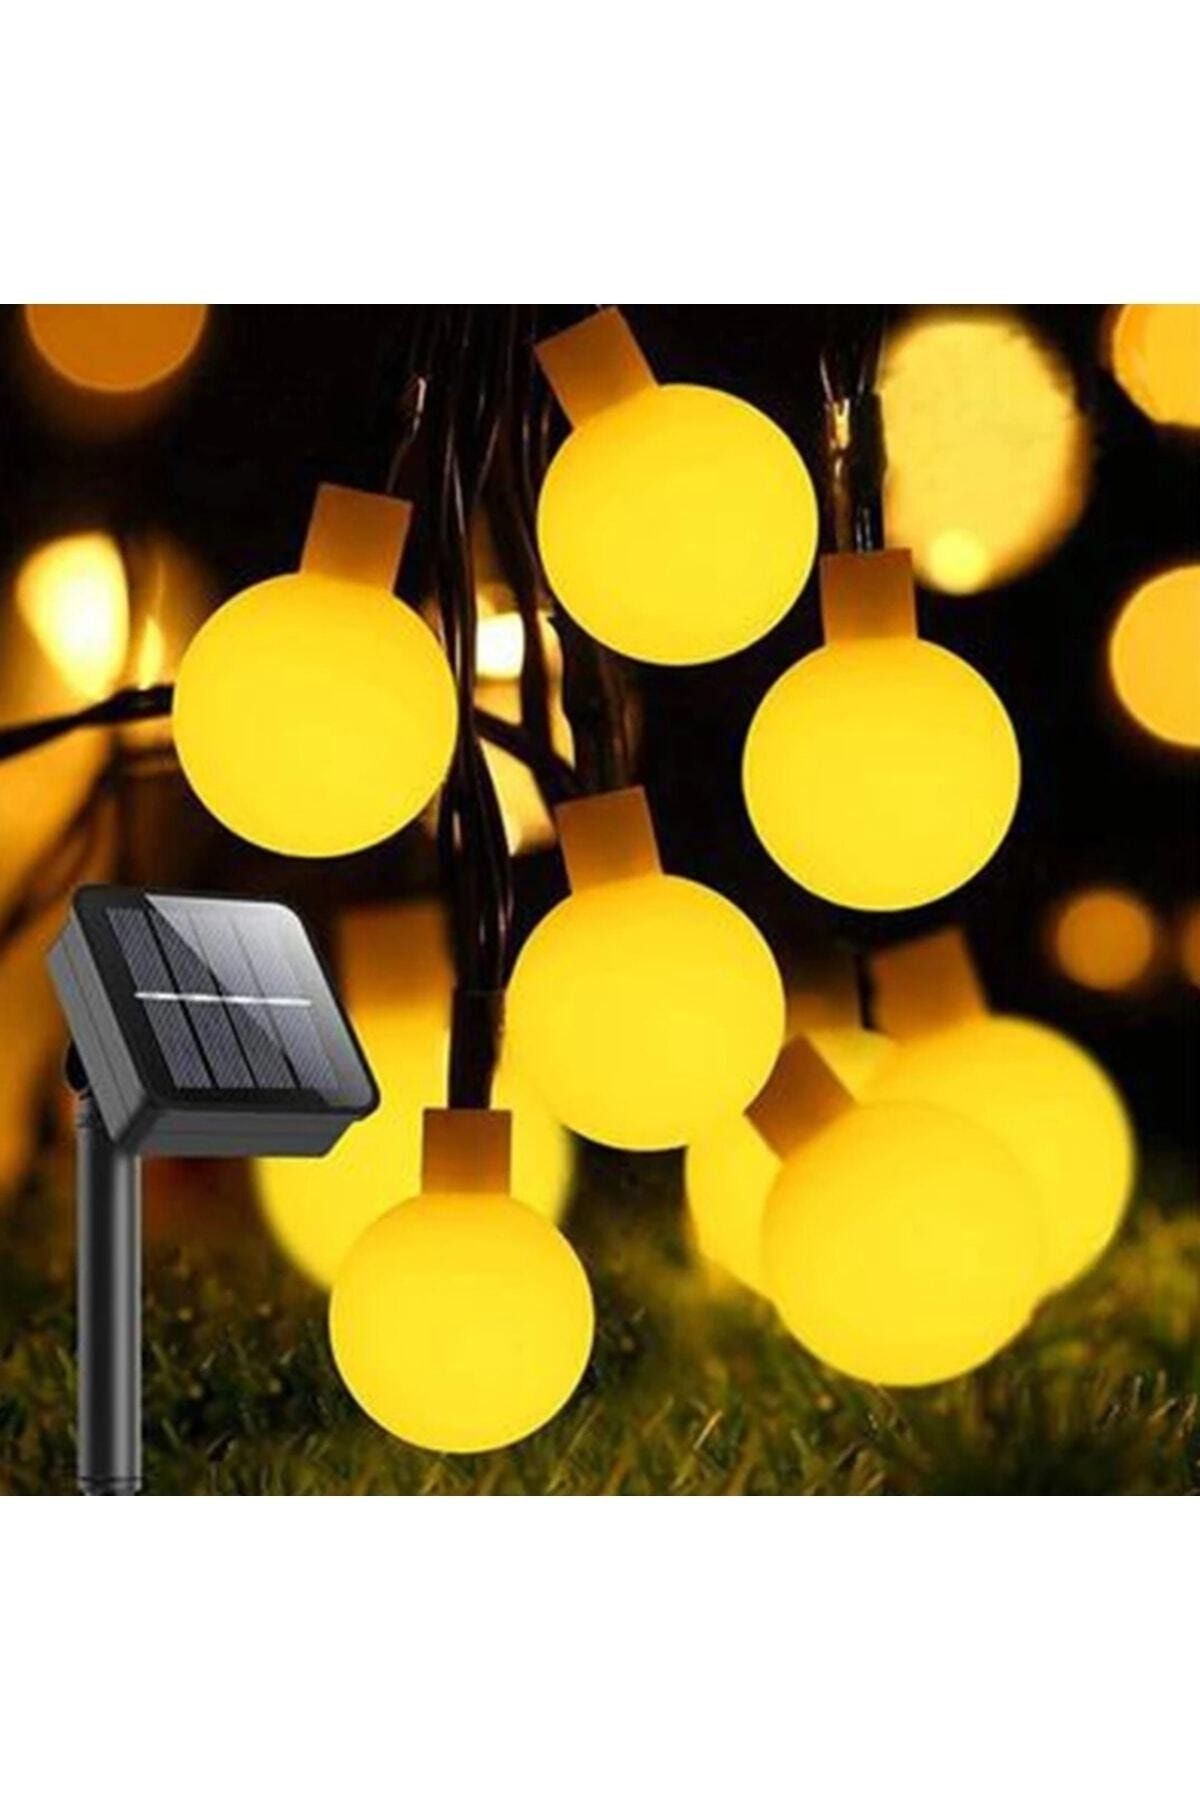 SARFEX Güneş Enerjili 5 Metre 20 Led Sarı Bahçe Teras Parti Balkon Süsü Aydınlatma Lambası Solar